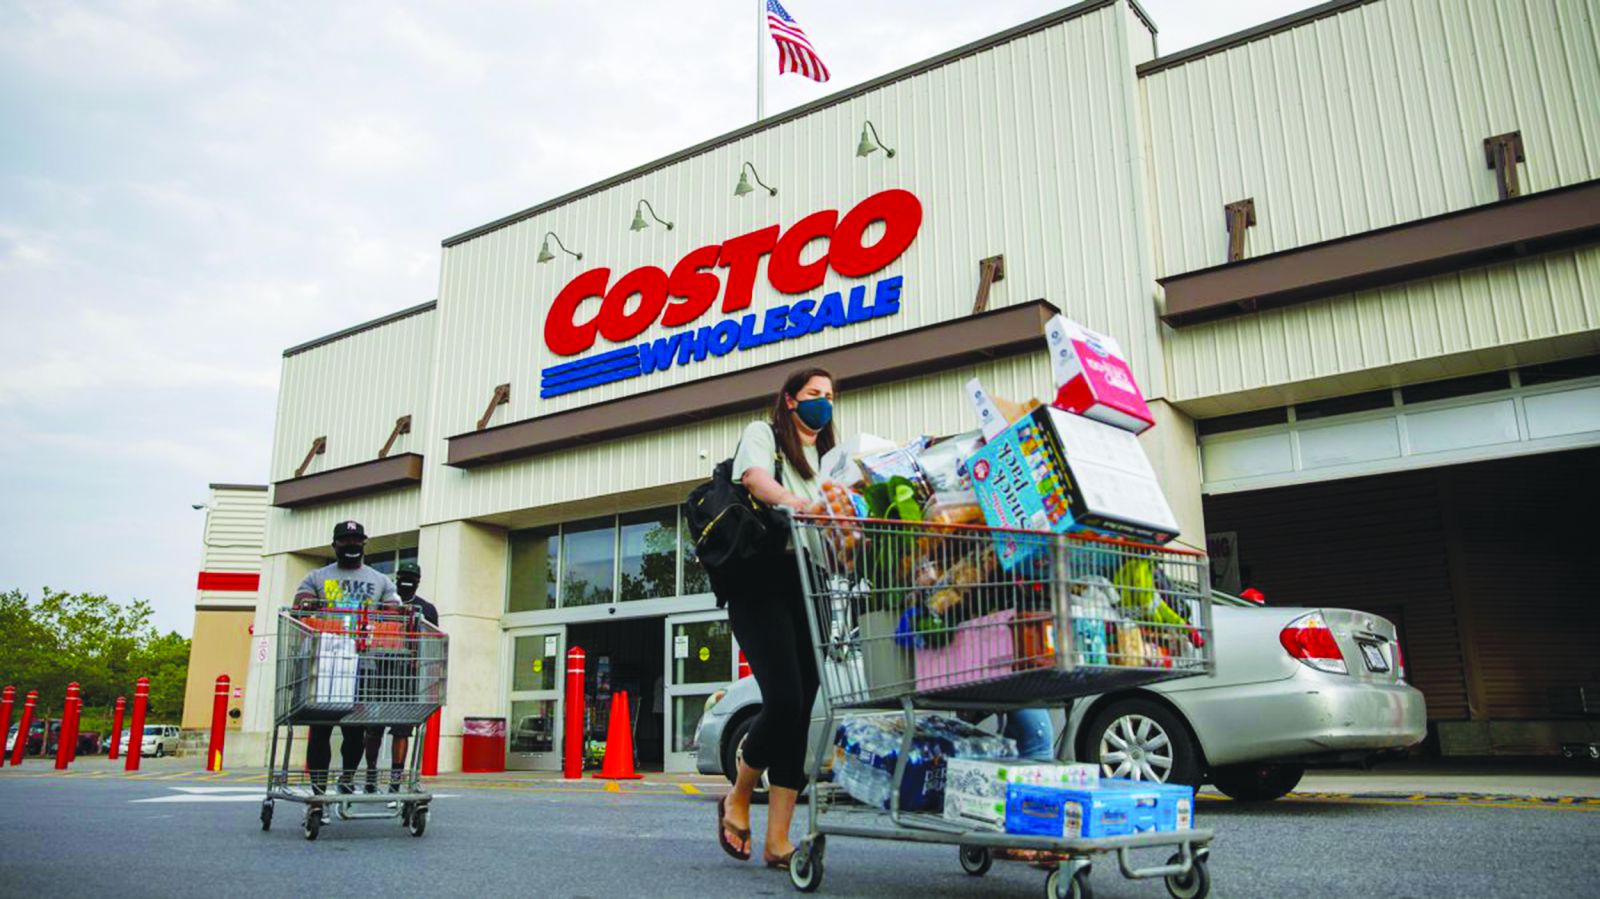 Nhờ những chiến lược cực kỳ thông minh, Costco đã đạt 3 tỷ USD doanh thu sau 6 năm đầu hoạt động